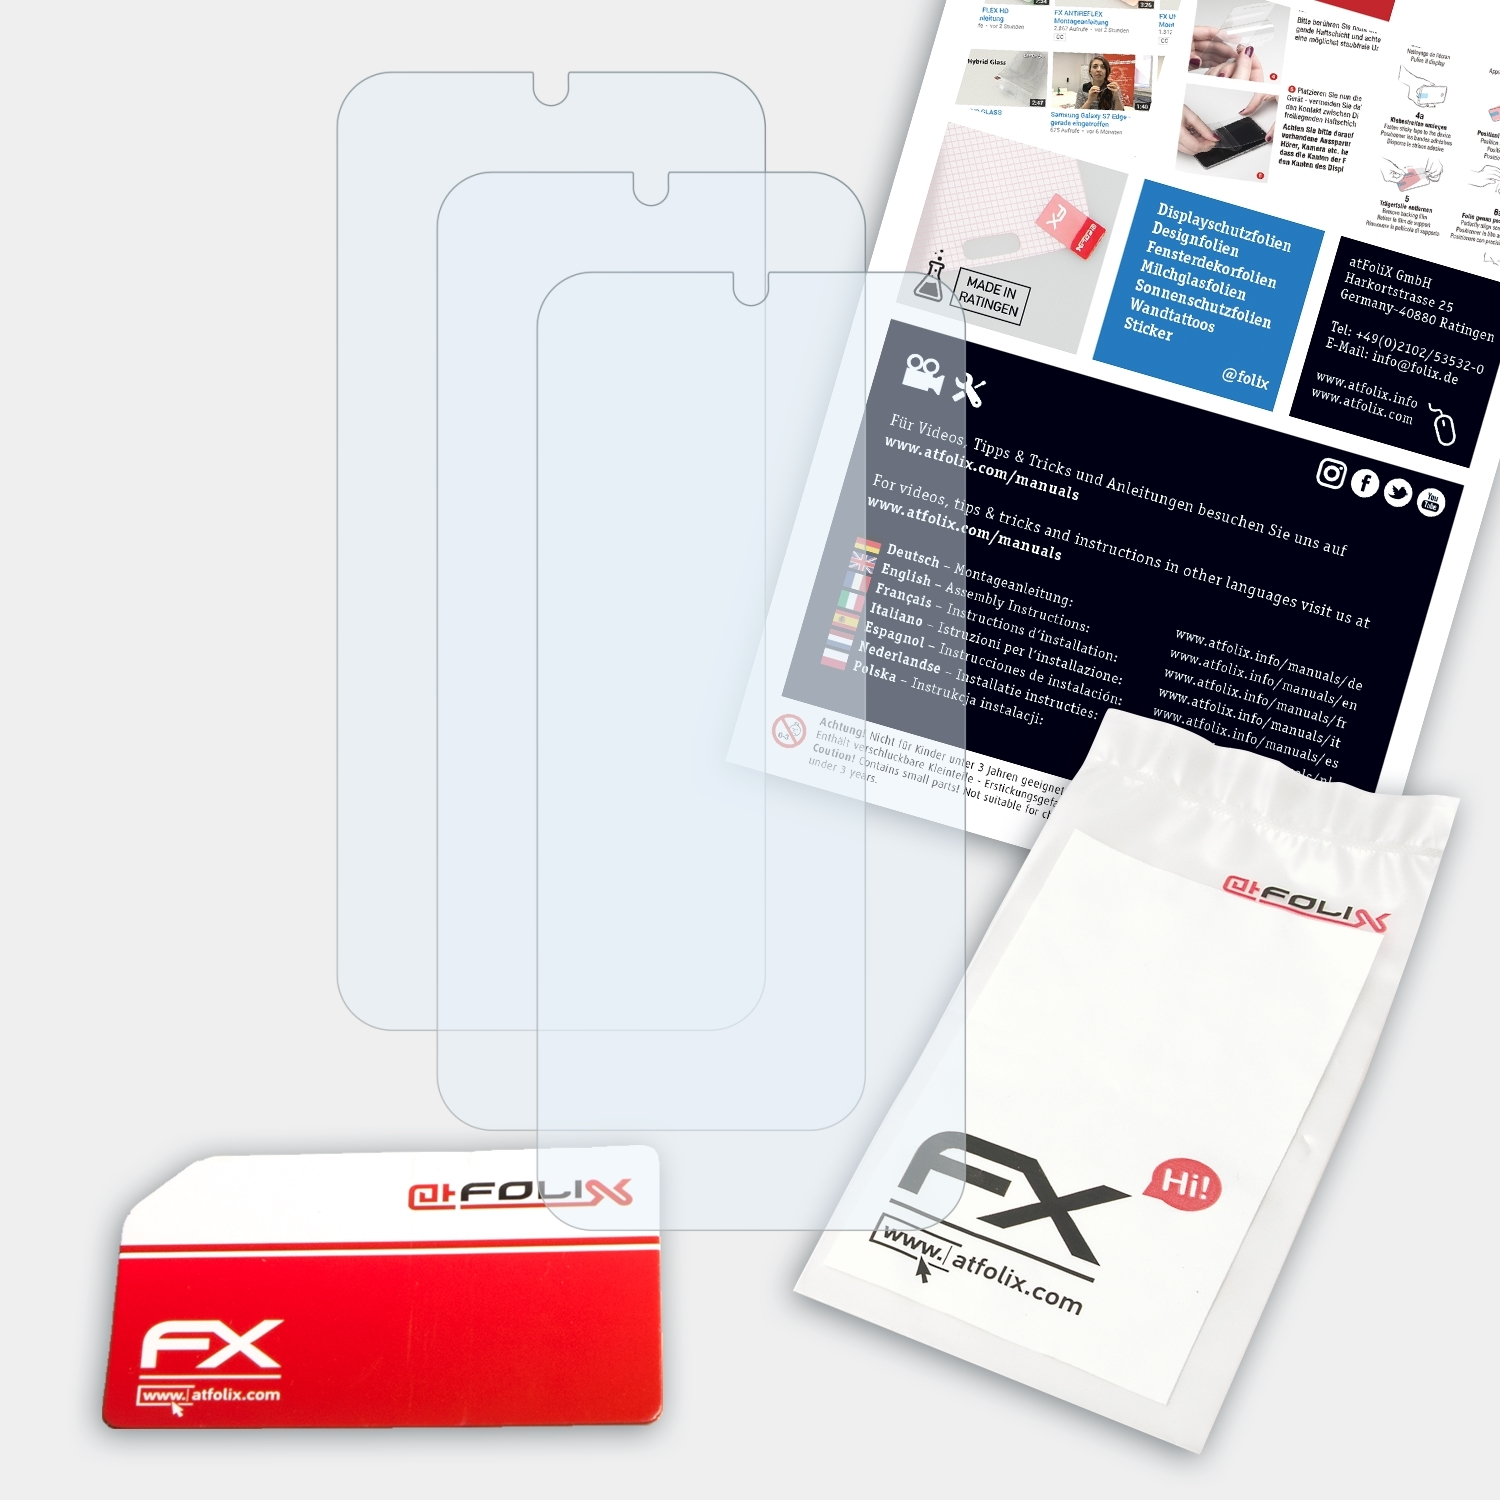 R5 3x FX-Clear Lava Displayschutz(für ATFOLIX Play)